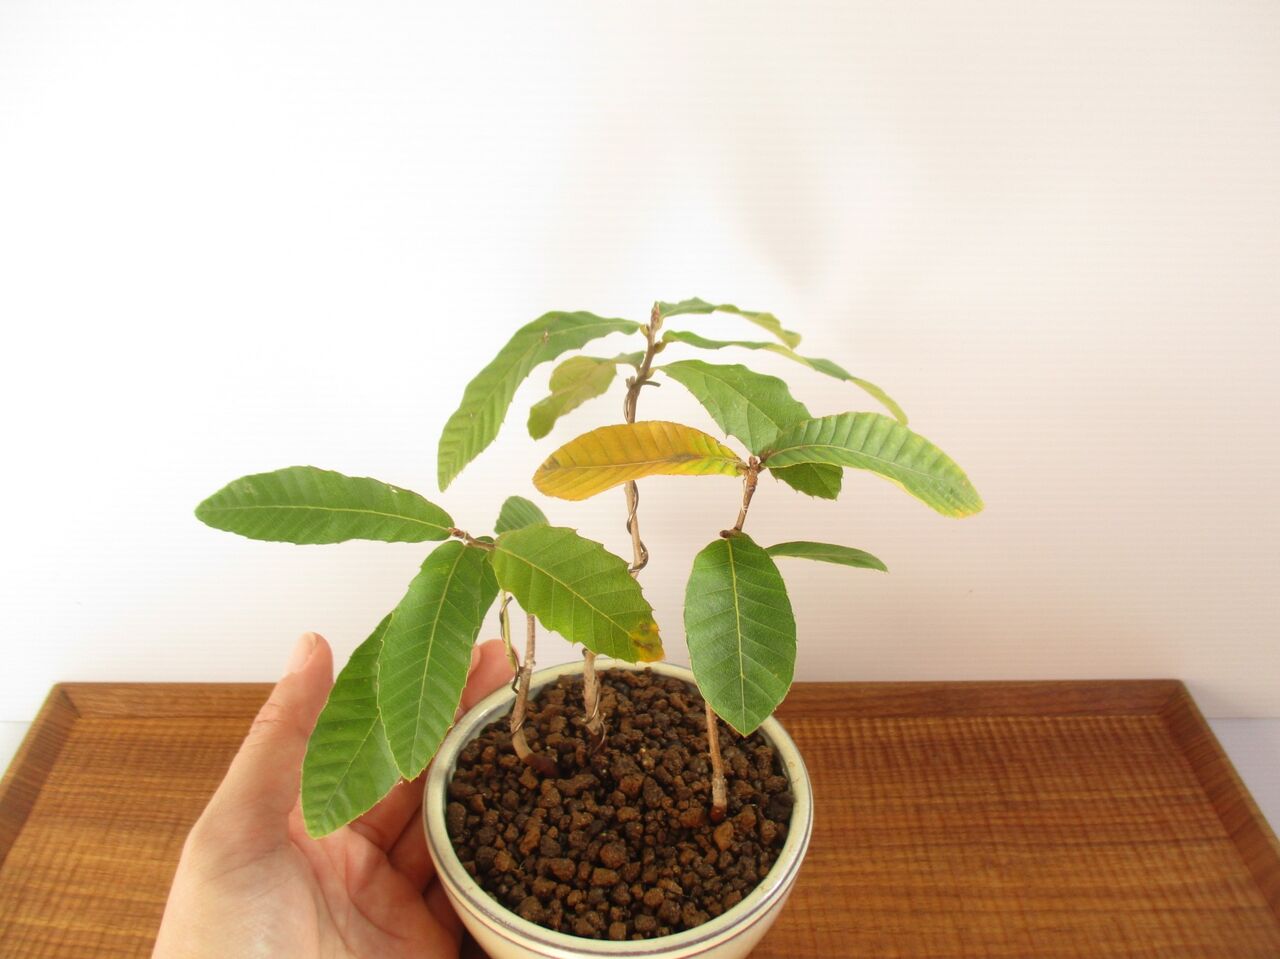 種から育てるミニ盆栽 ドングリの発芽方法 ボンサイ マムのはじめてでも簡単 おしゃれミニ盆栽の作りかた